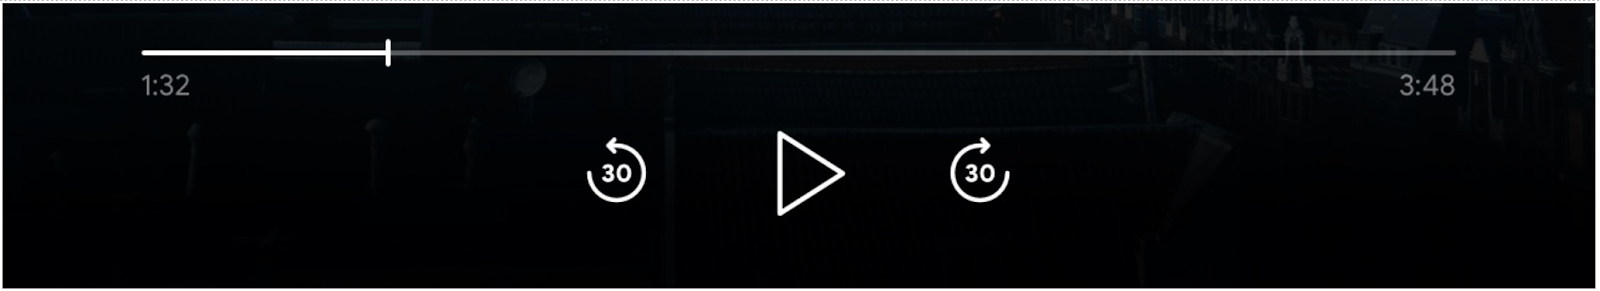 Imagen de los controles del reproductor multimedia: Se habilitó la barra de progreso, el botón “Reproducir” y los botones “Saltar hacia adelante” y “Saltar hacia atrás”